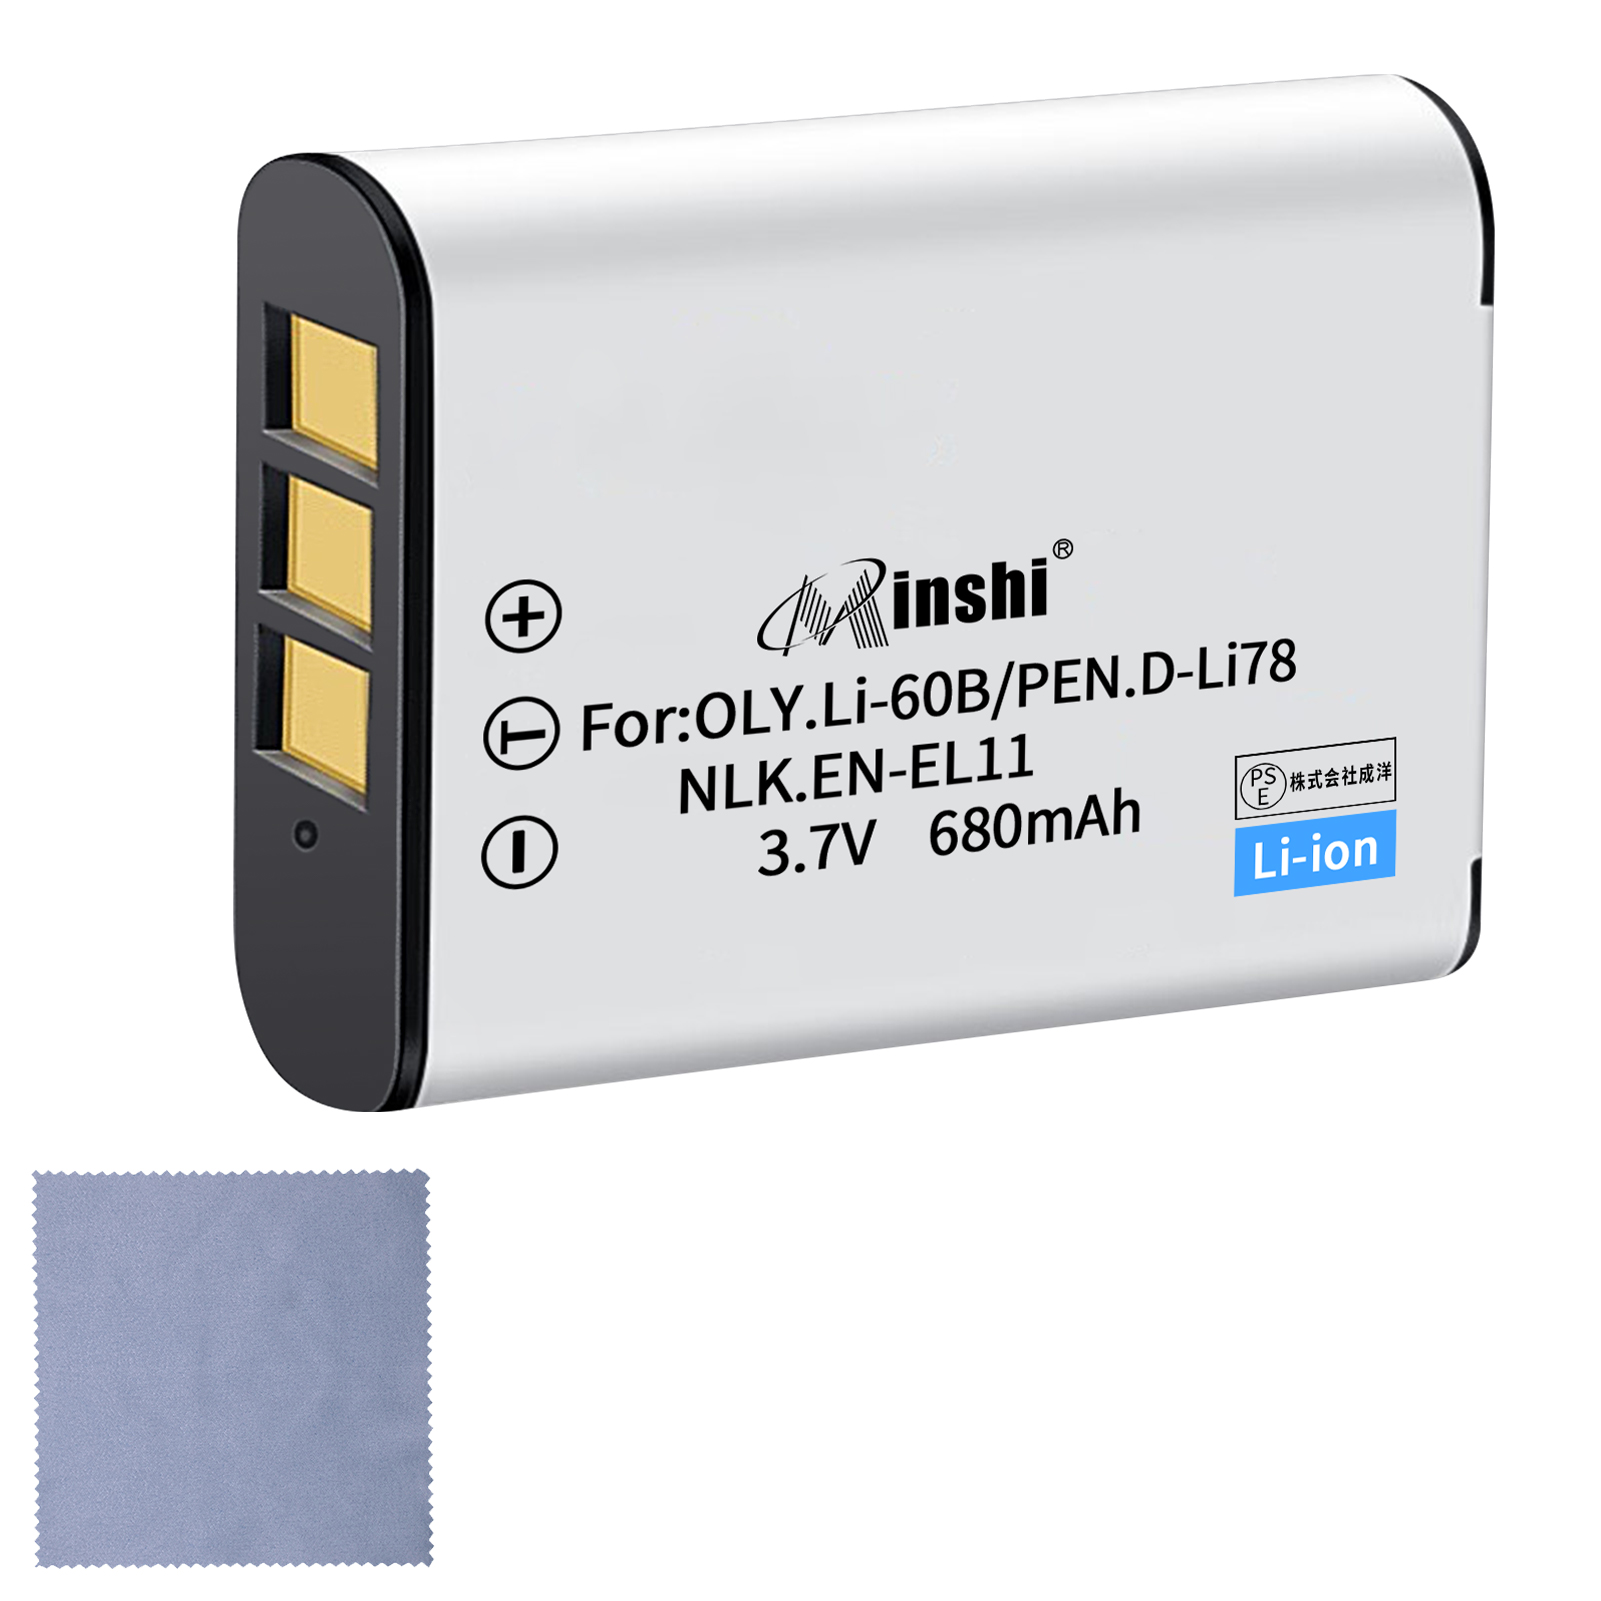 【クロス付き】minshi NIKON Optio V20 EN-EL11 【680mAh 3.7V】PSE認定済 高品質交換用バッテリー オリジナル充電器との互換性がない